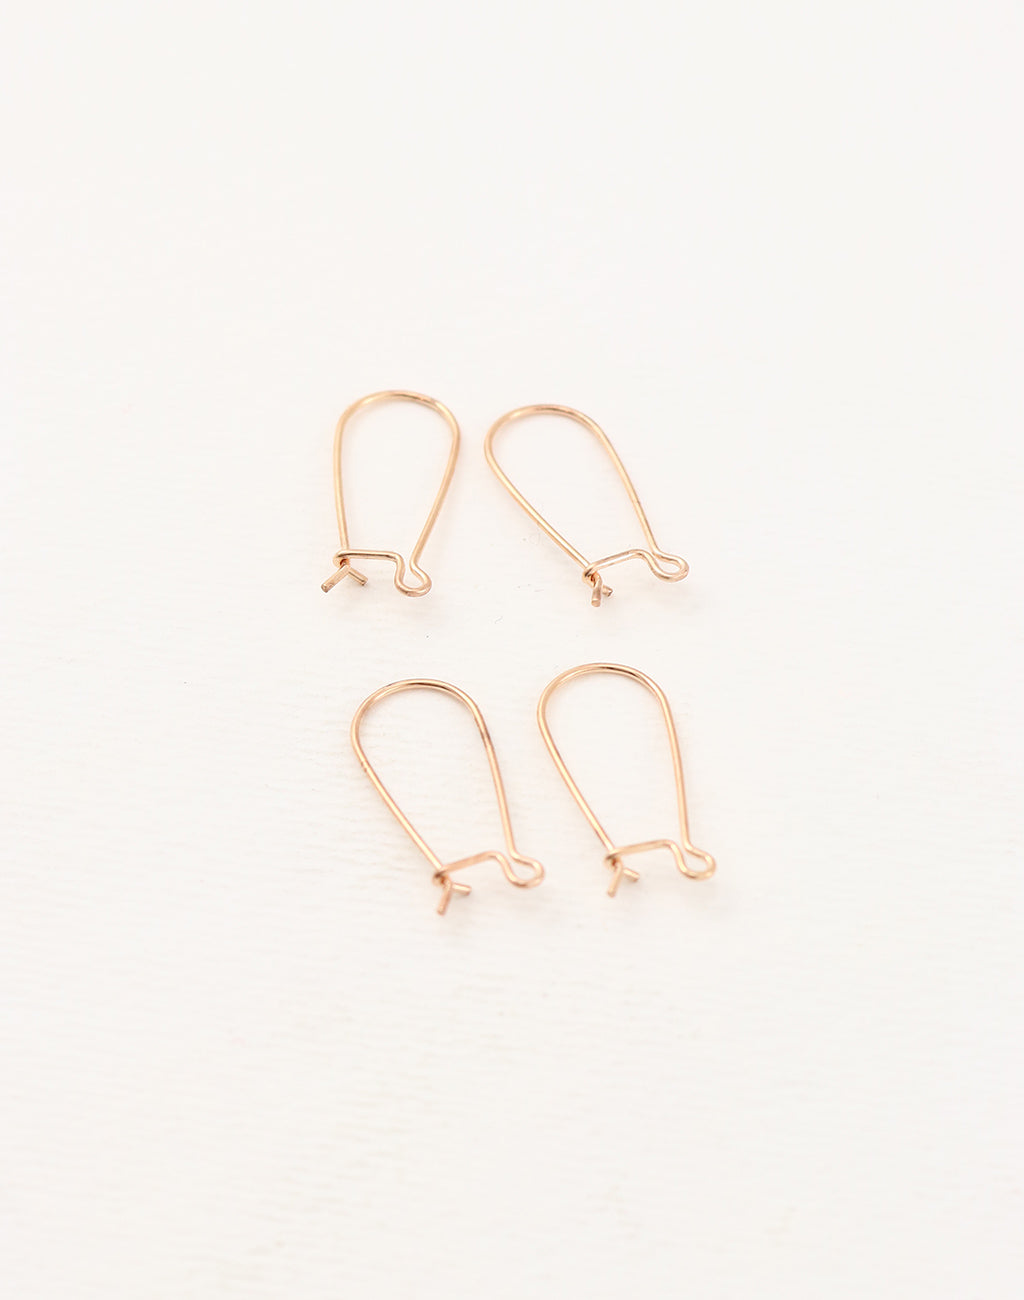 French Hook Earrings / Earring Hooks / Ear Wires / Dangle Earring